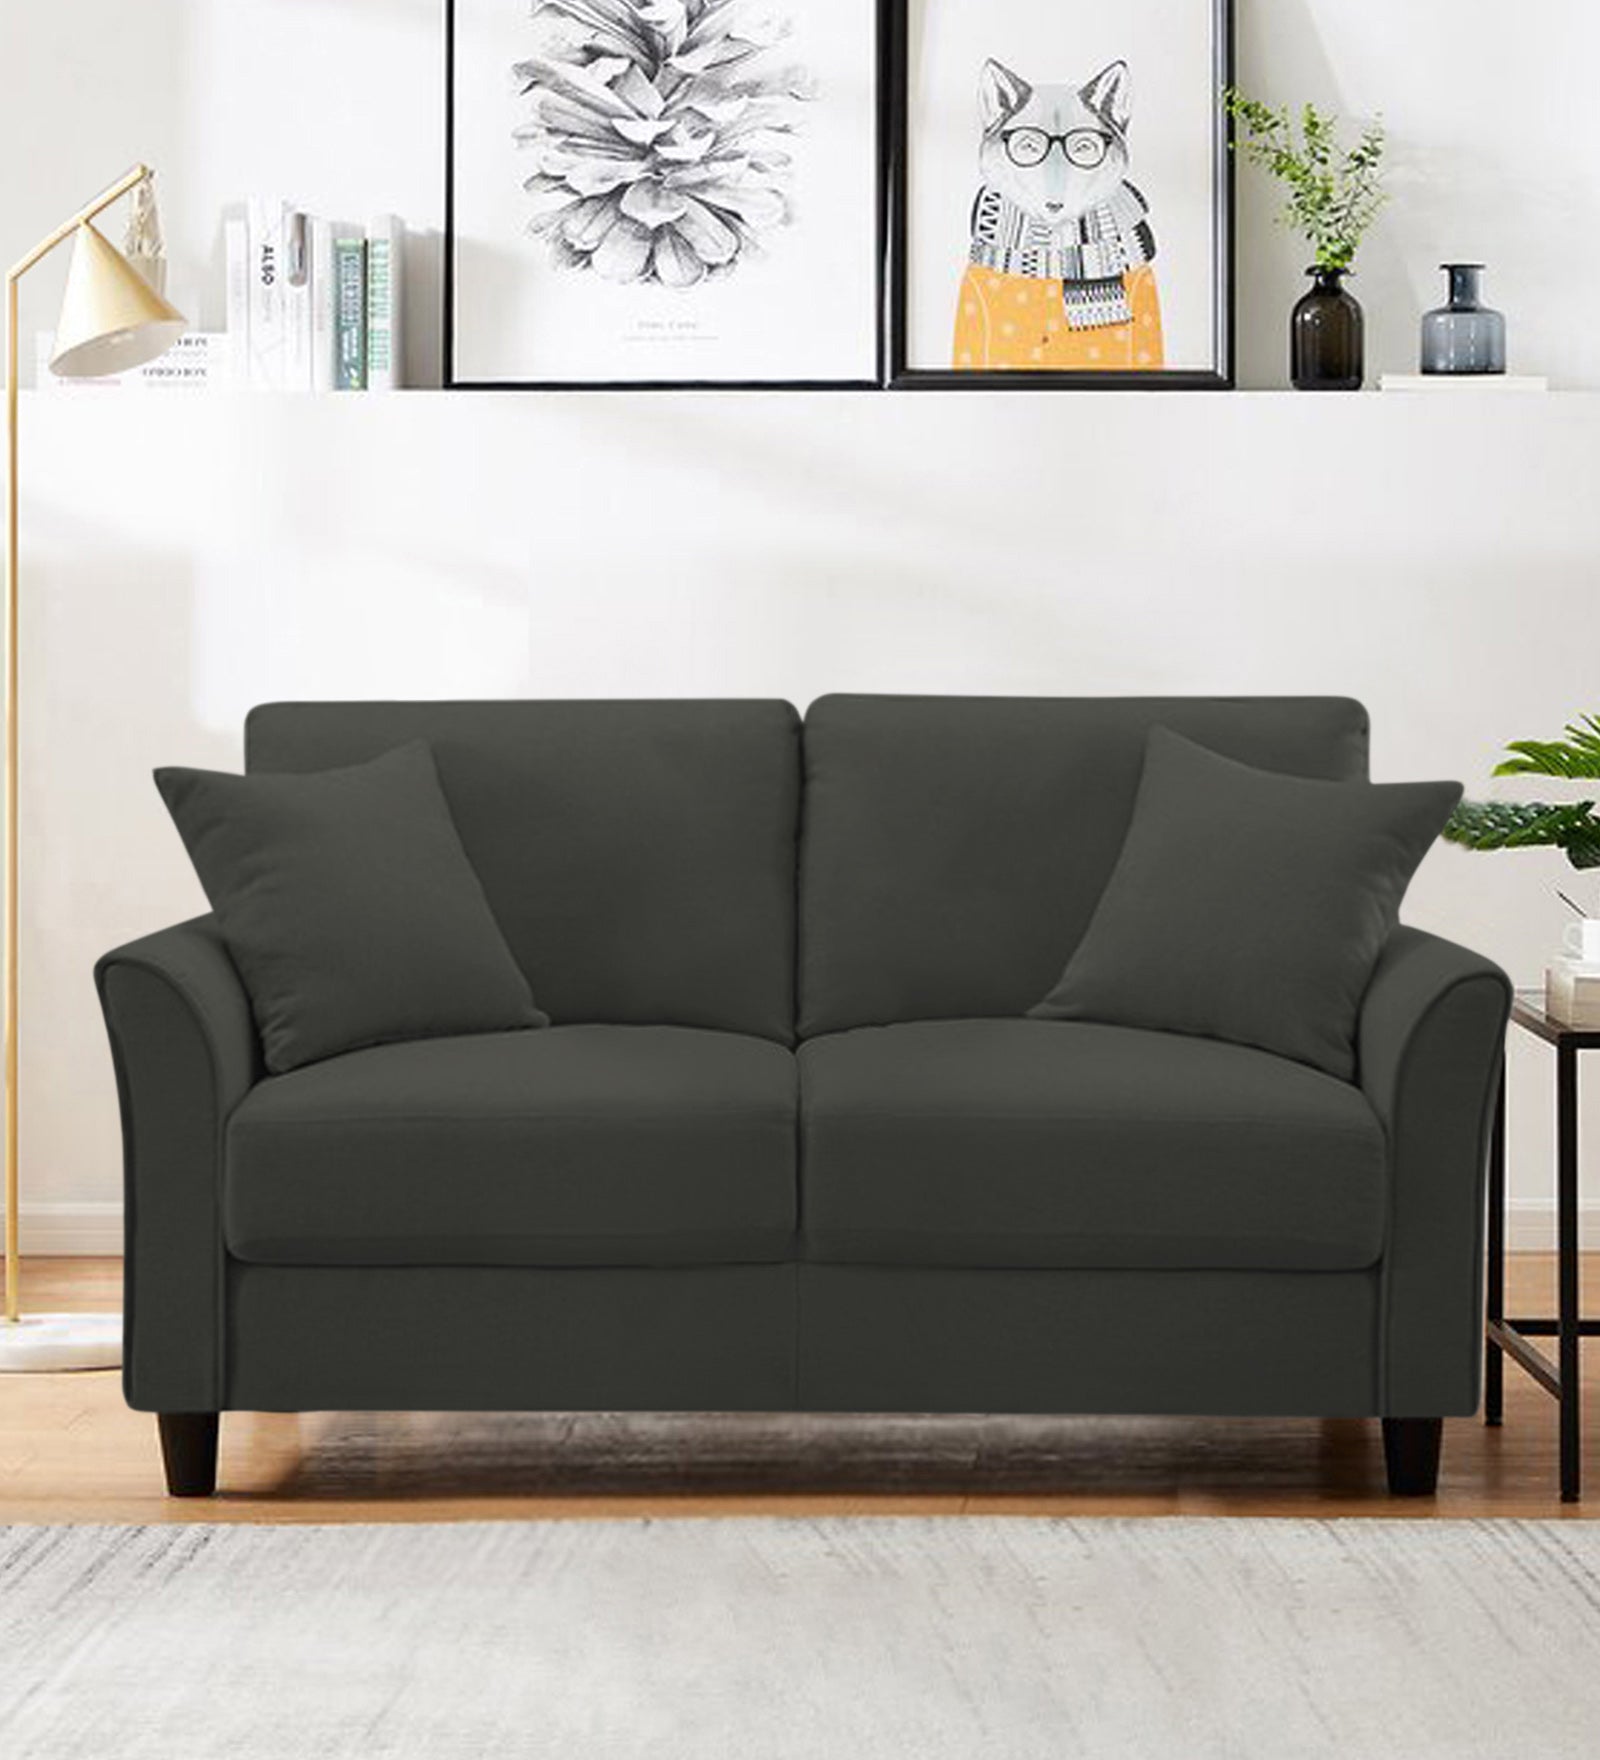 Daroo Velvet 2 Seater Sofa In Hory Grey Colour